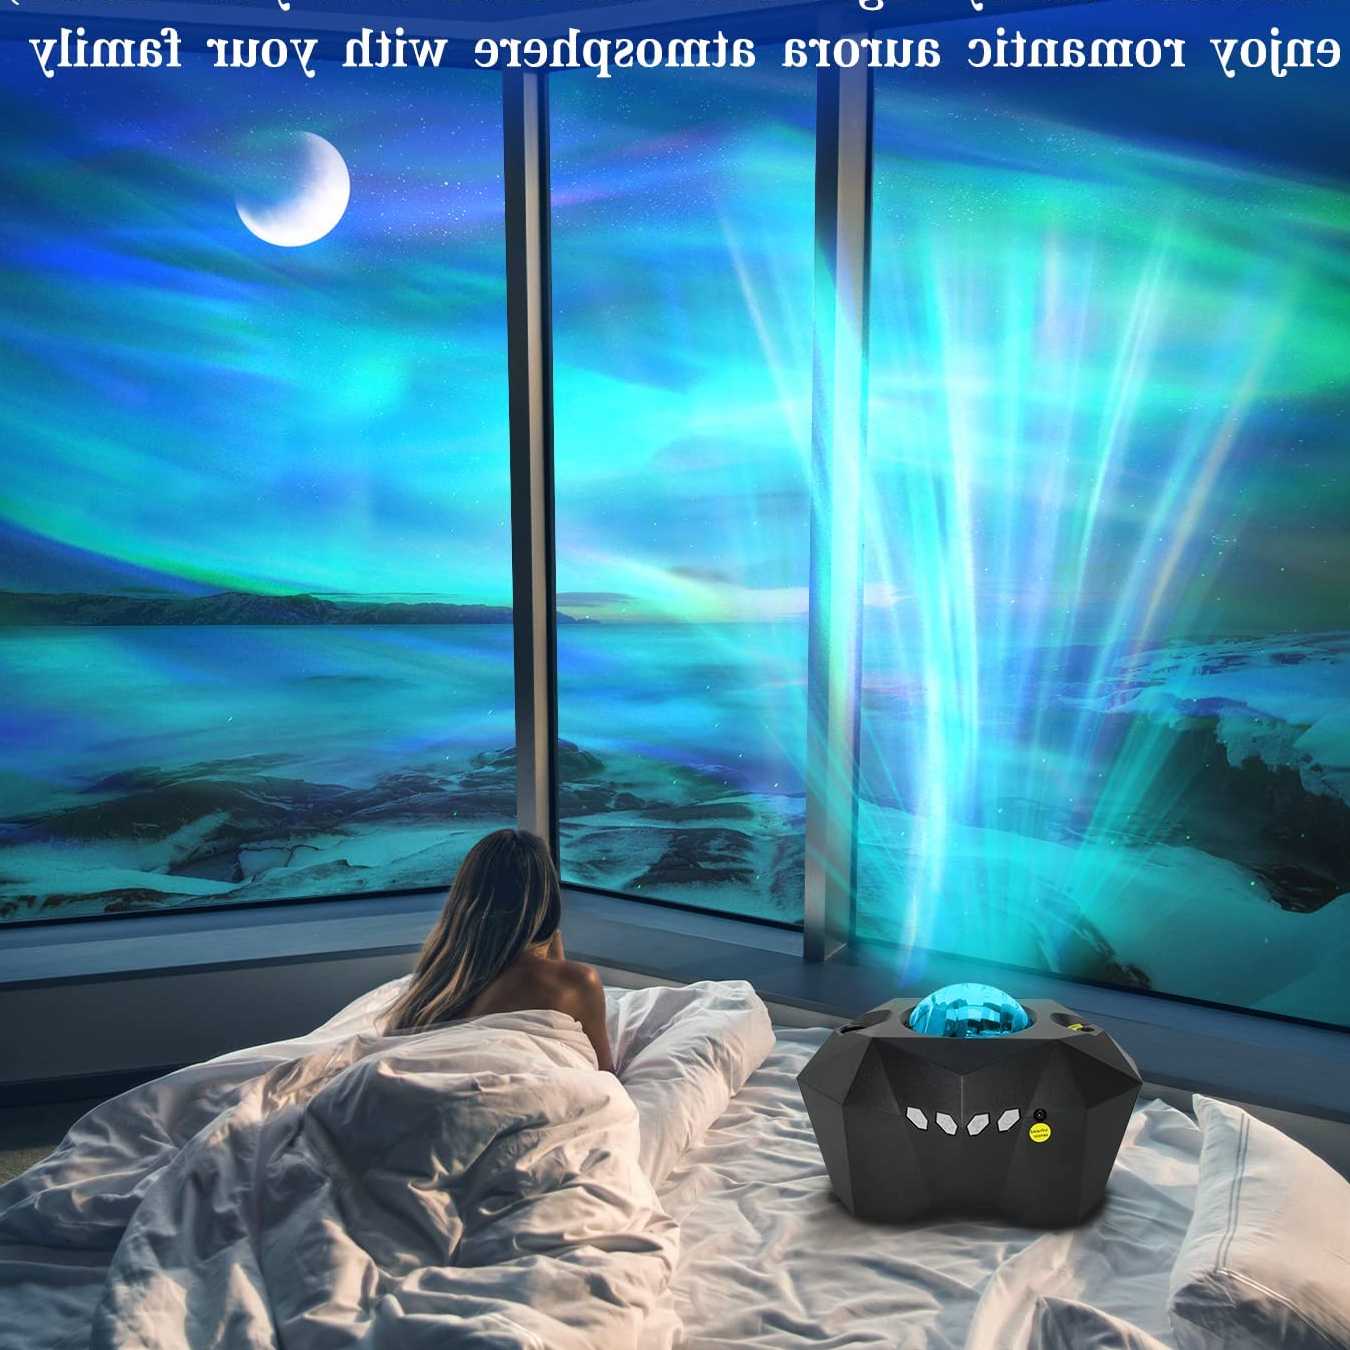 Tanio Projektor LED Aurora Galaxy - lampa projektora światła półno… sklep